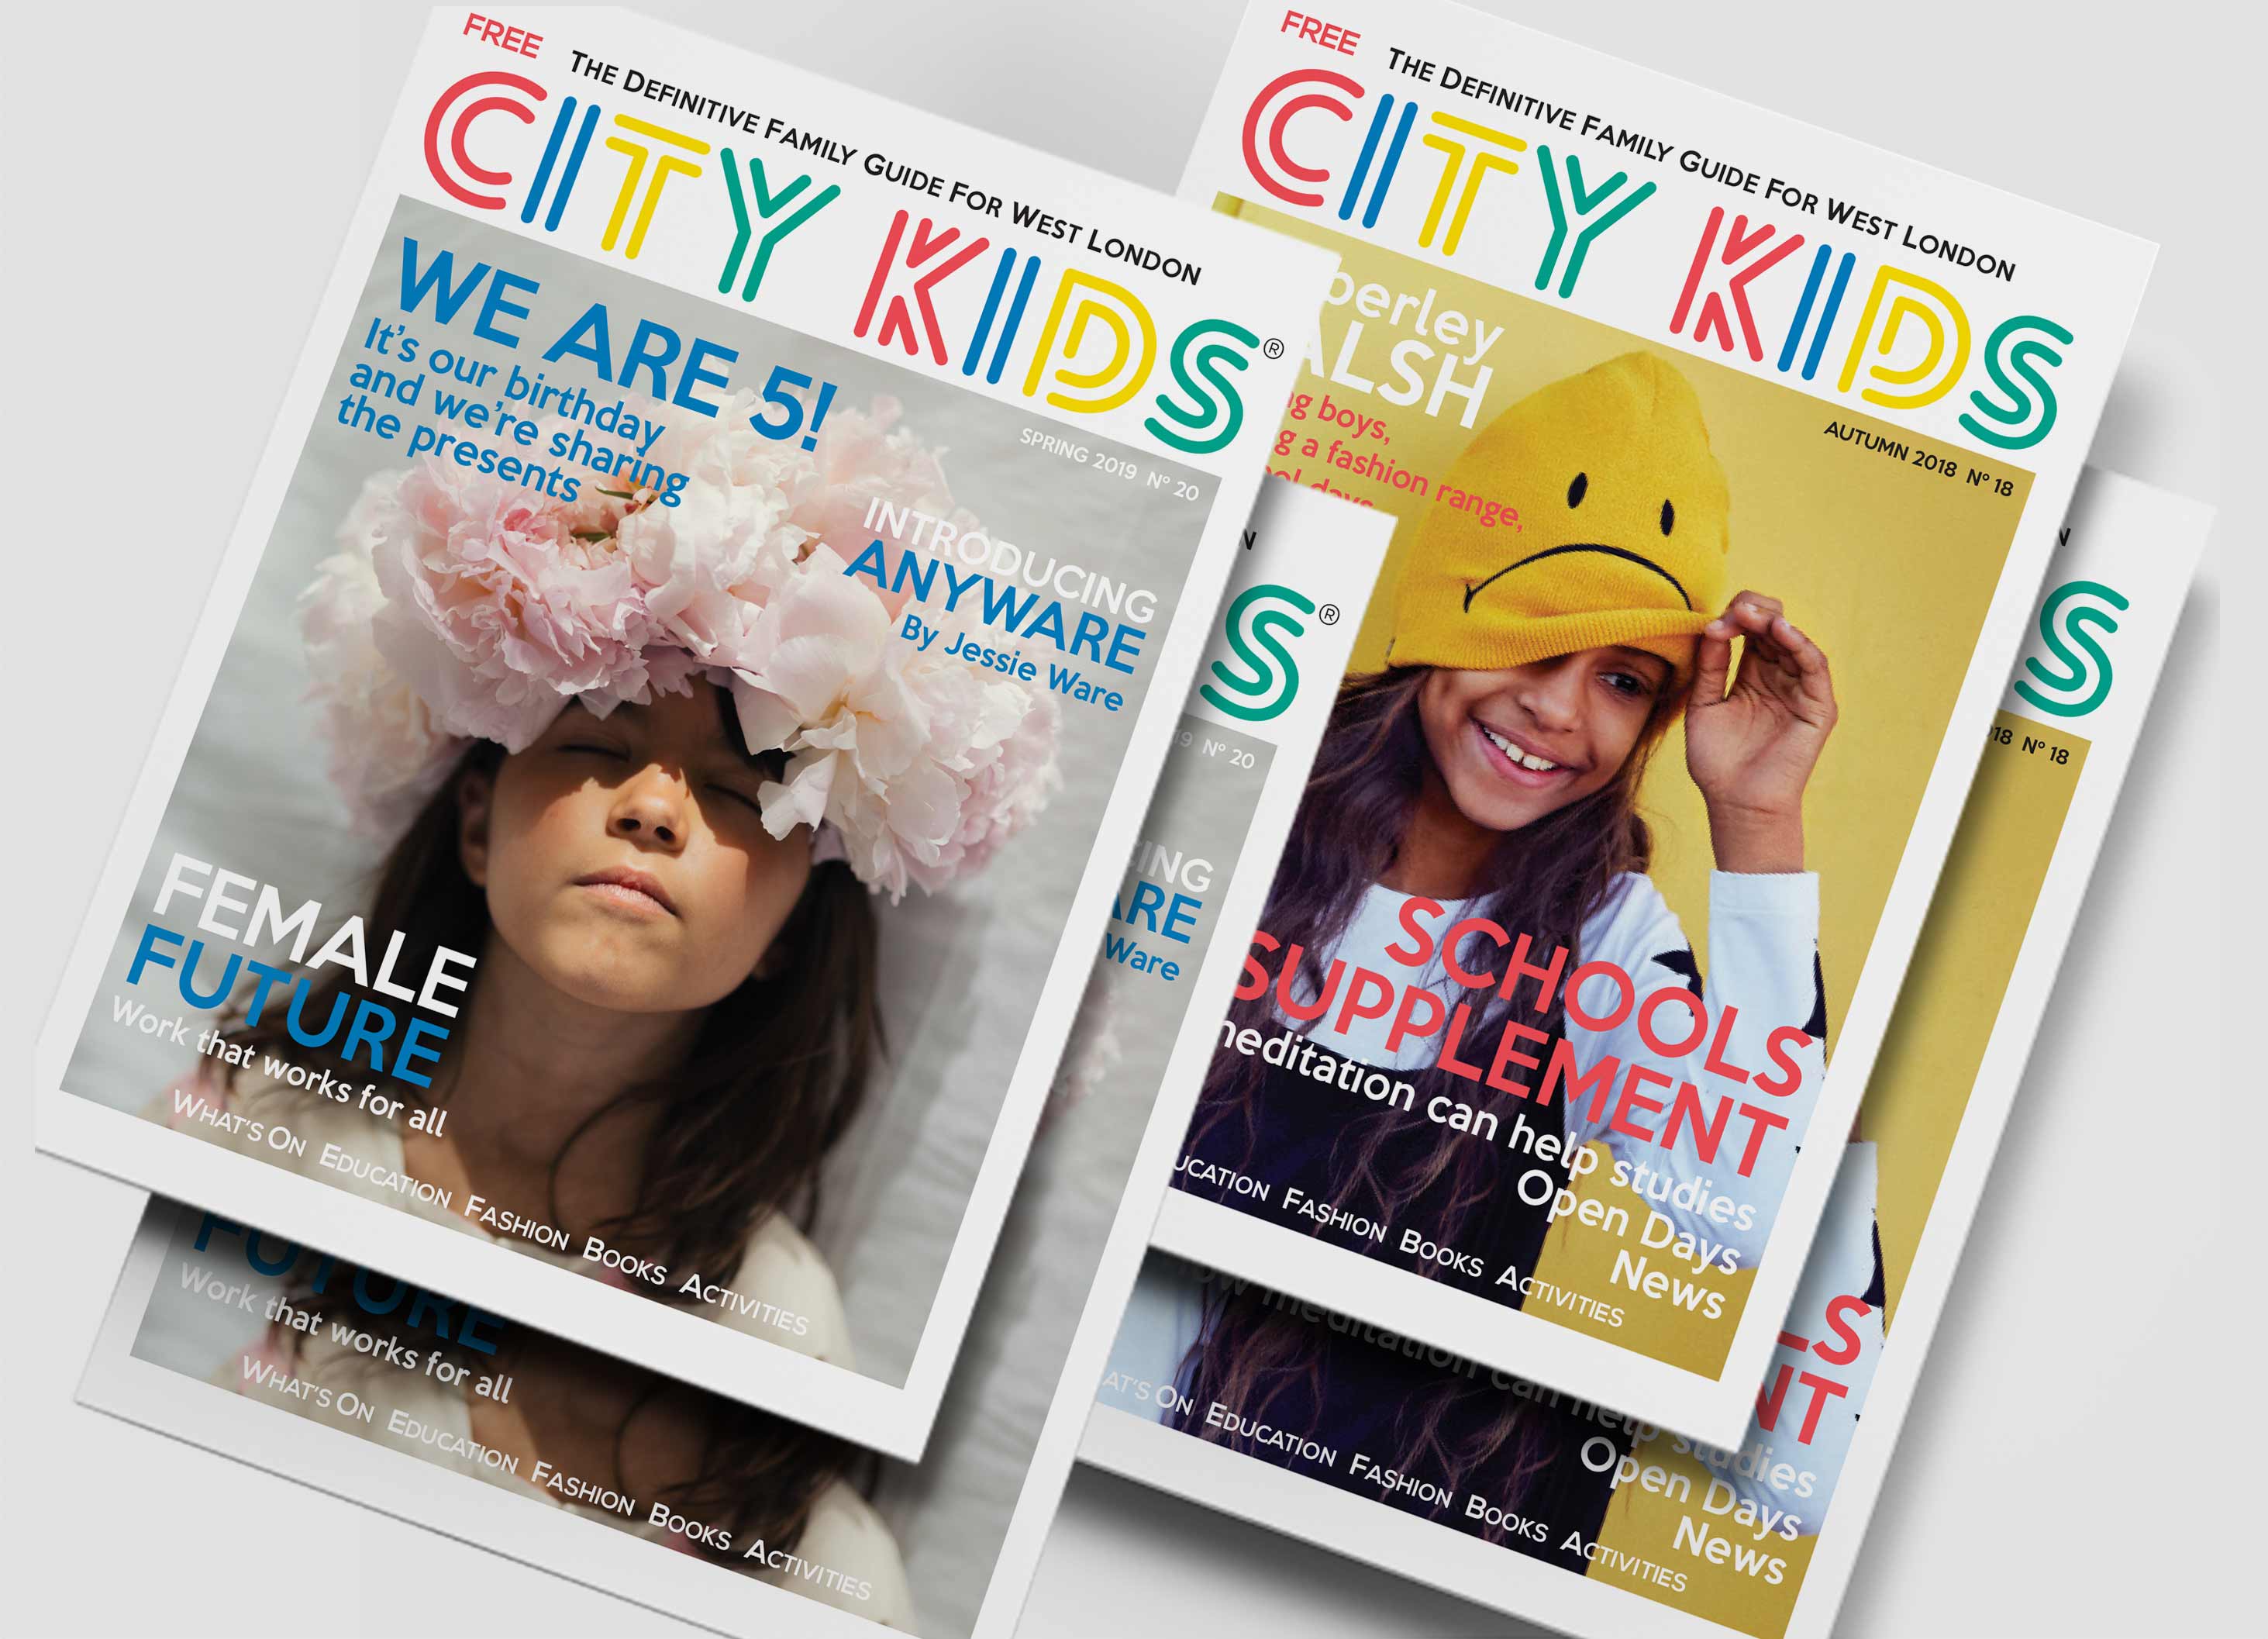 City Kids Magazine